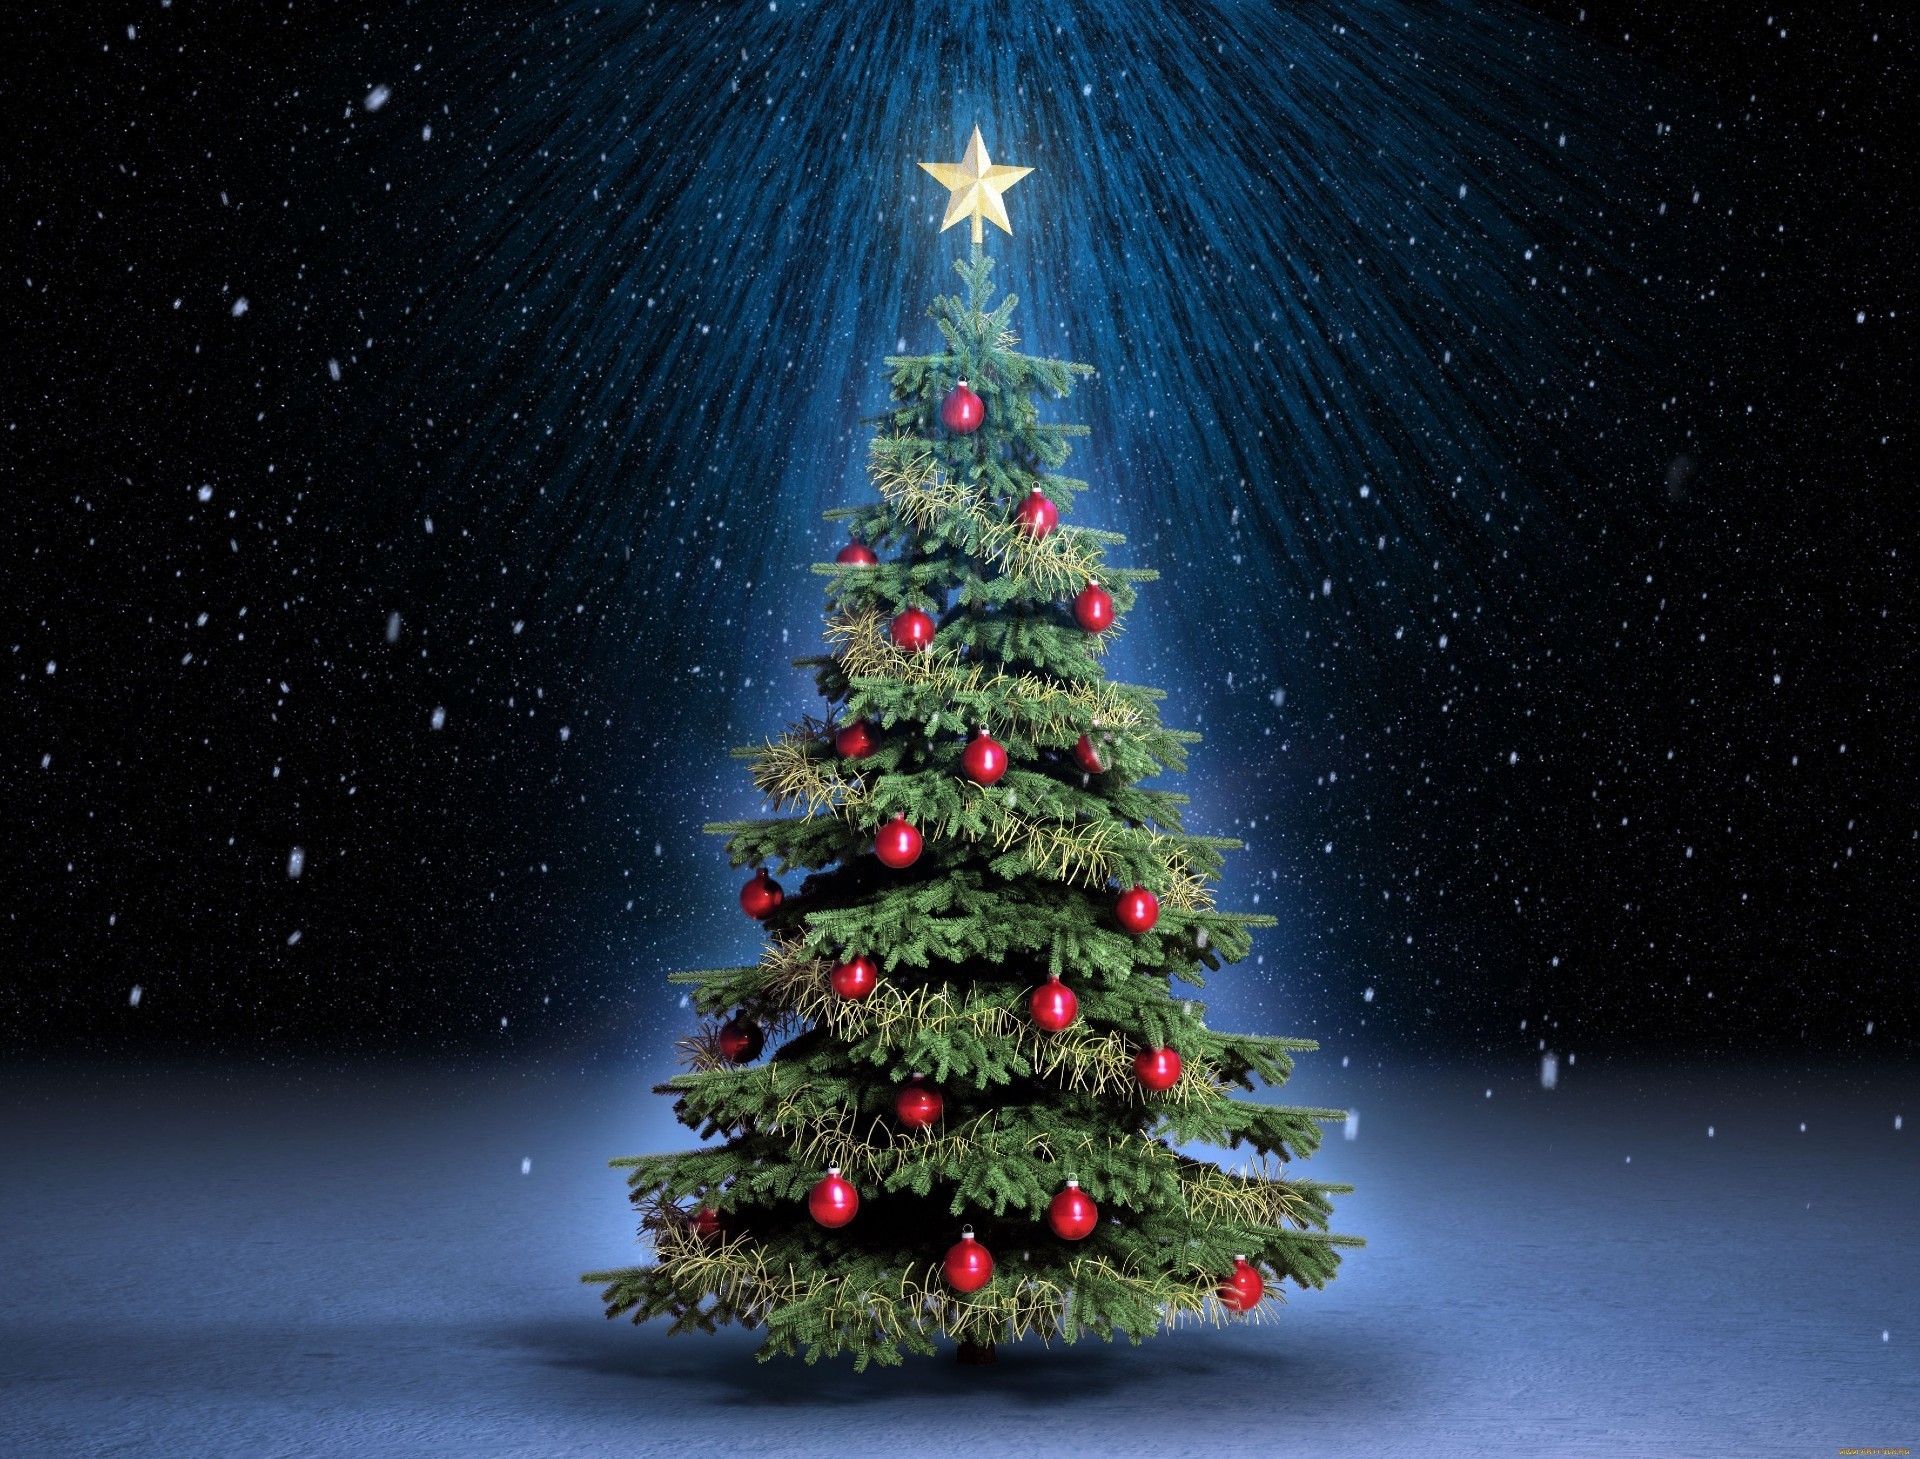 новый год рождество зима снег рождественская елка праздник дерево снежинка мерри ева сосна пихта свет луна эвергрин мяч сезон сфера хвойные